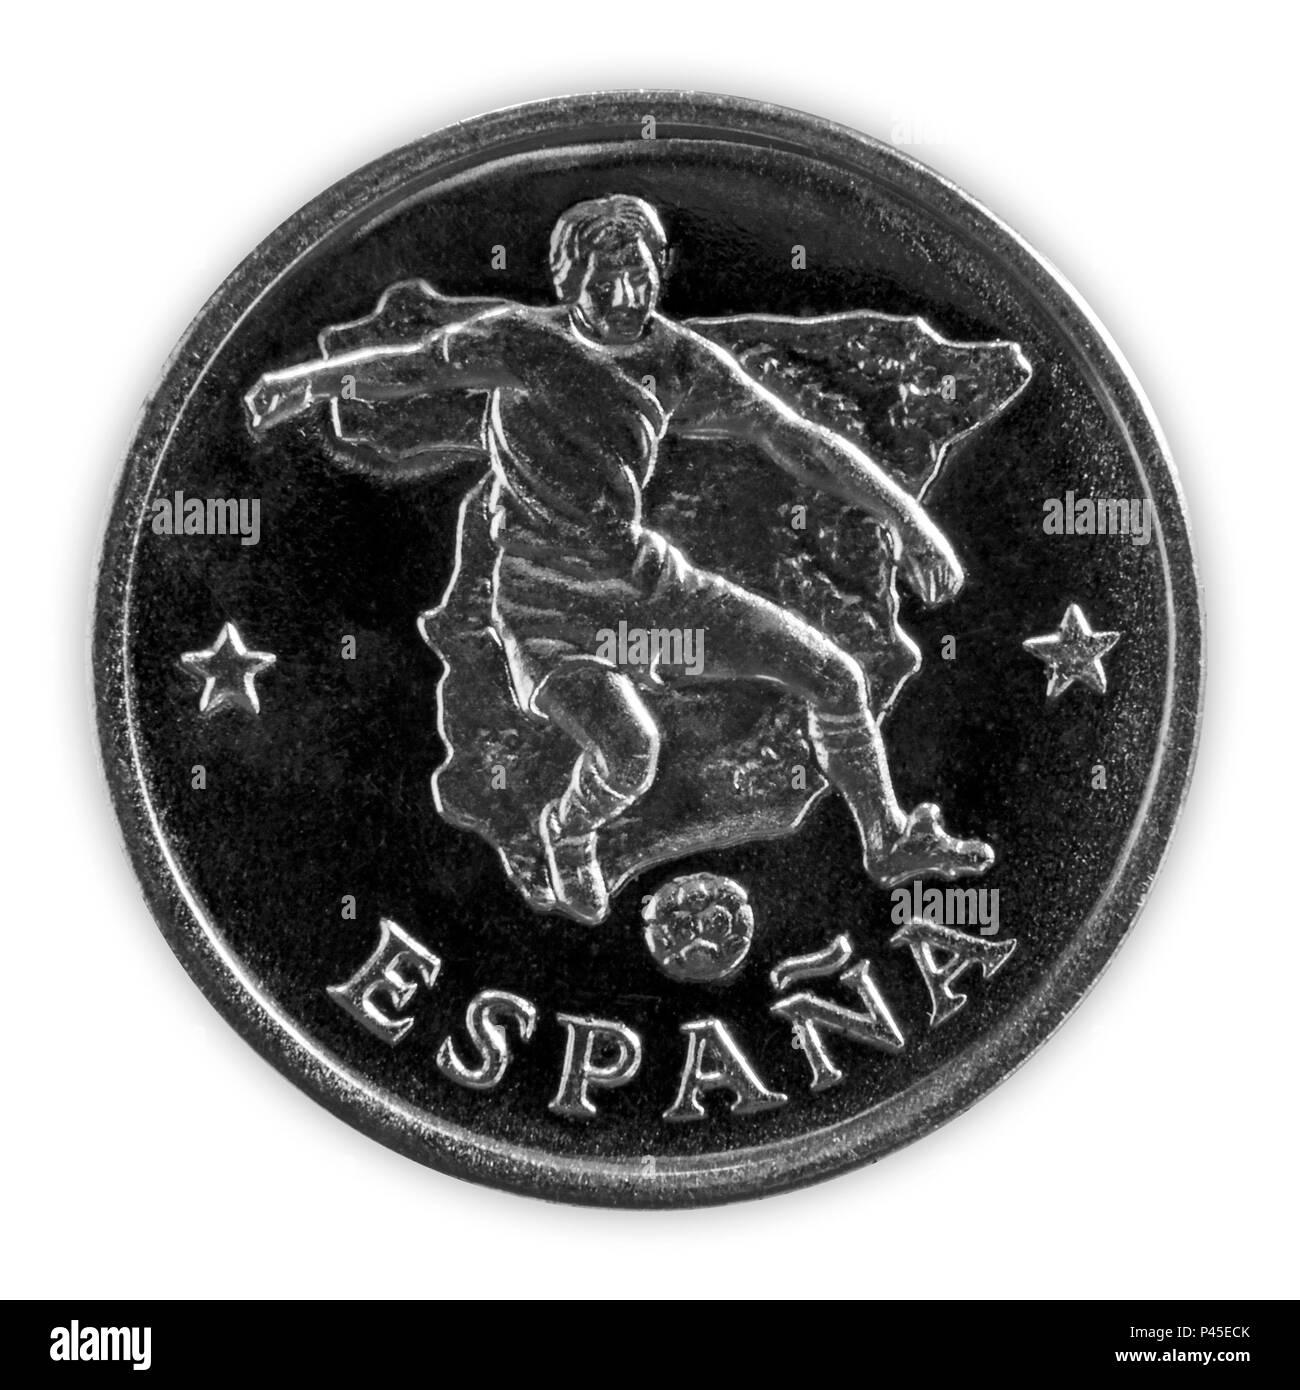 Spanien - Juni 18, 2018: FIFA-WM-Gedenkmünze mit einem Fußballspieler in das spanische Team, betitelt Espana, mit Karte von Spanien in der Ba Stockfoto